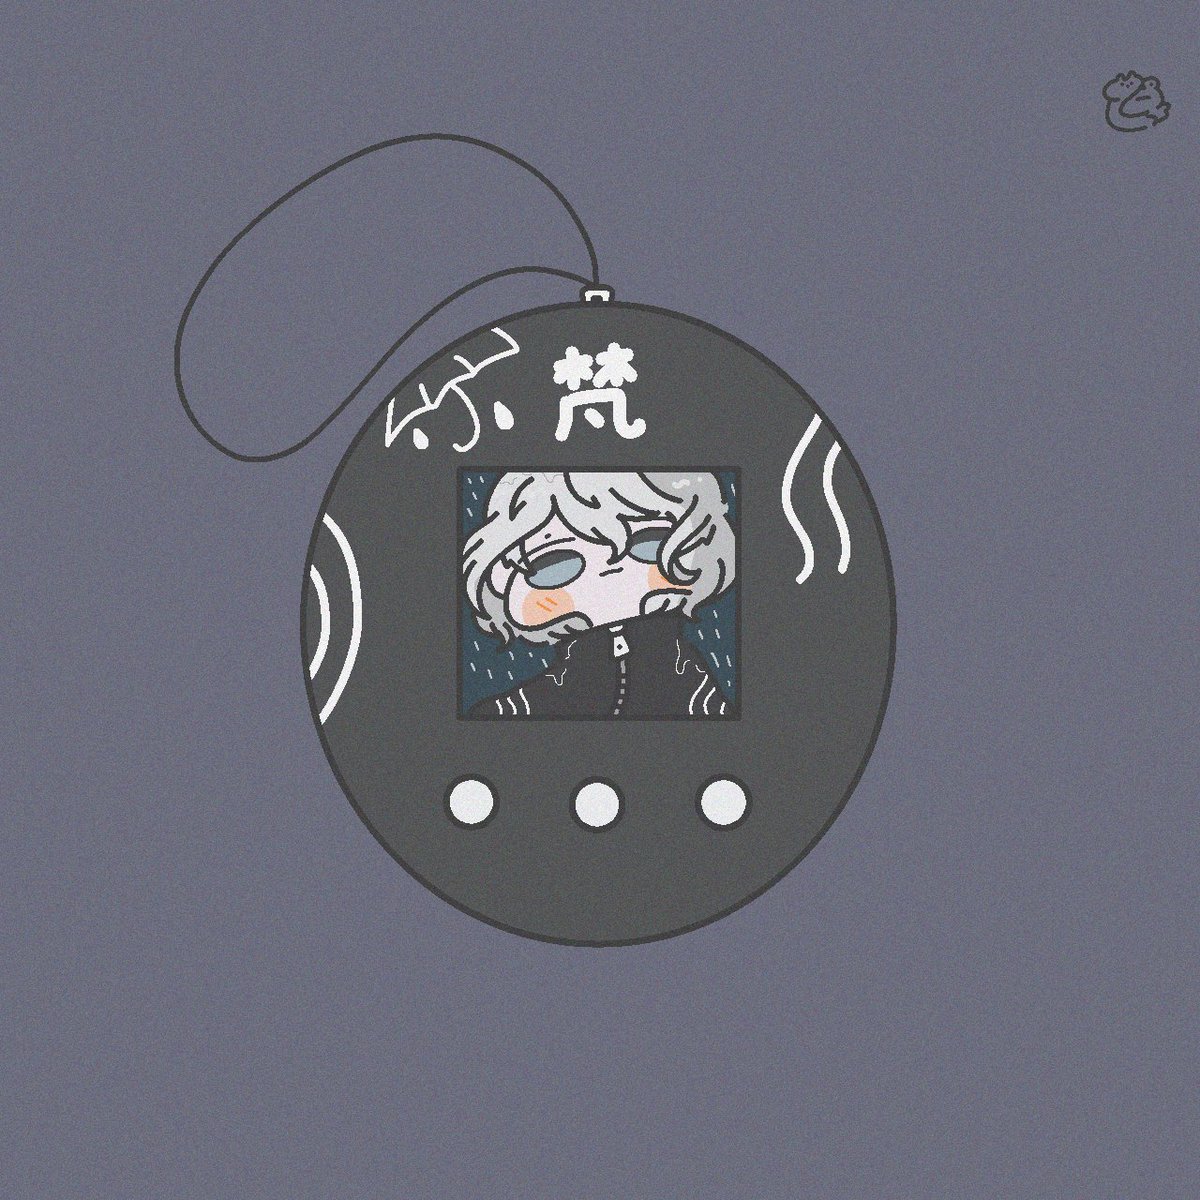 「東リべっちまとめ(再掲」)

#東卍FA 」|猫蛙のイラスト